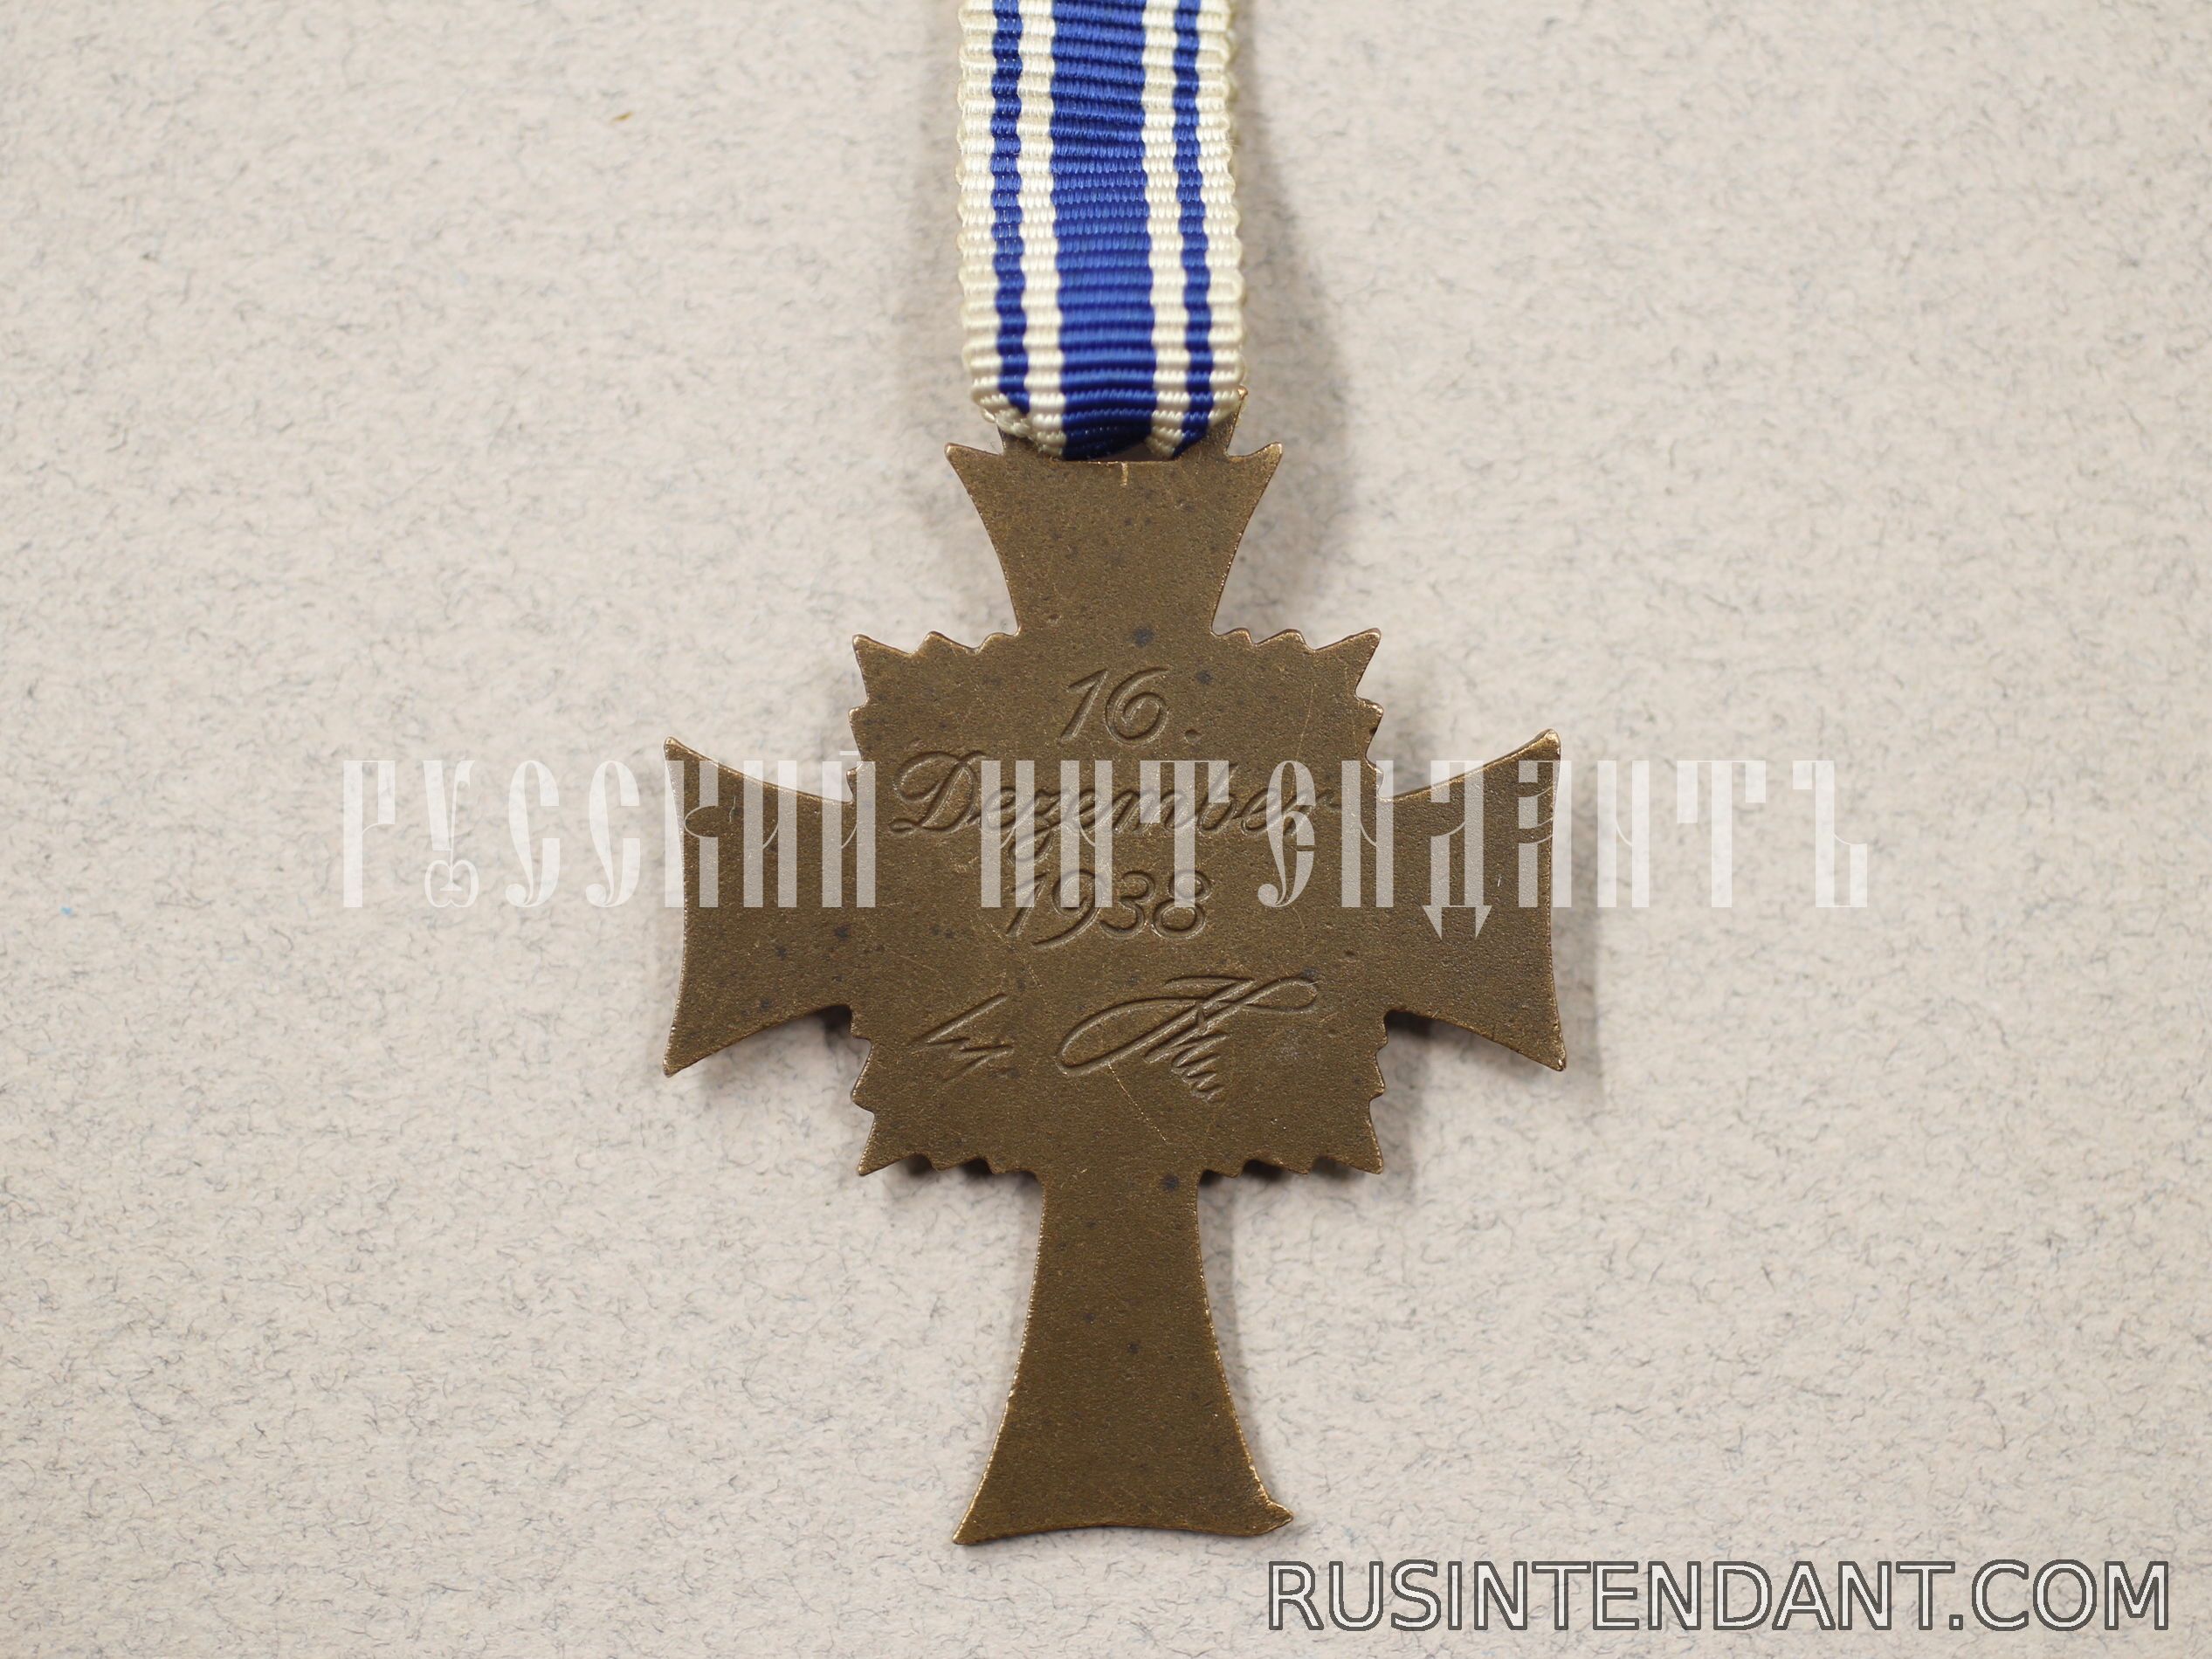 Фото 2: Почетный крест Немецкой матери "Бронзовый" 